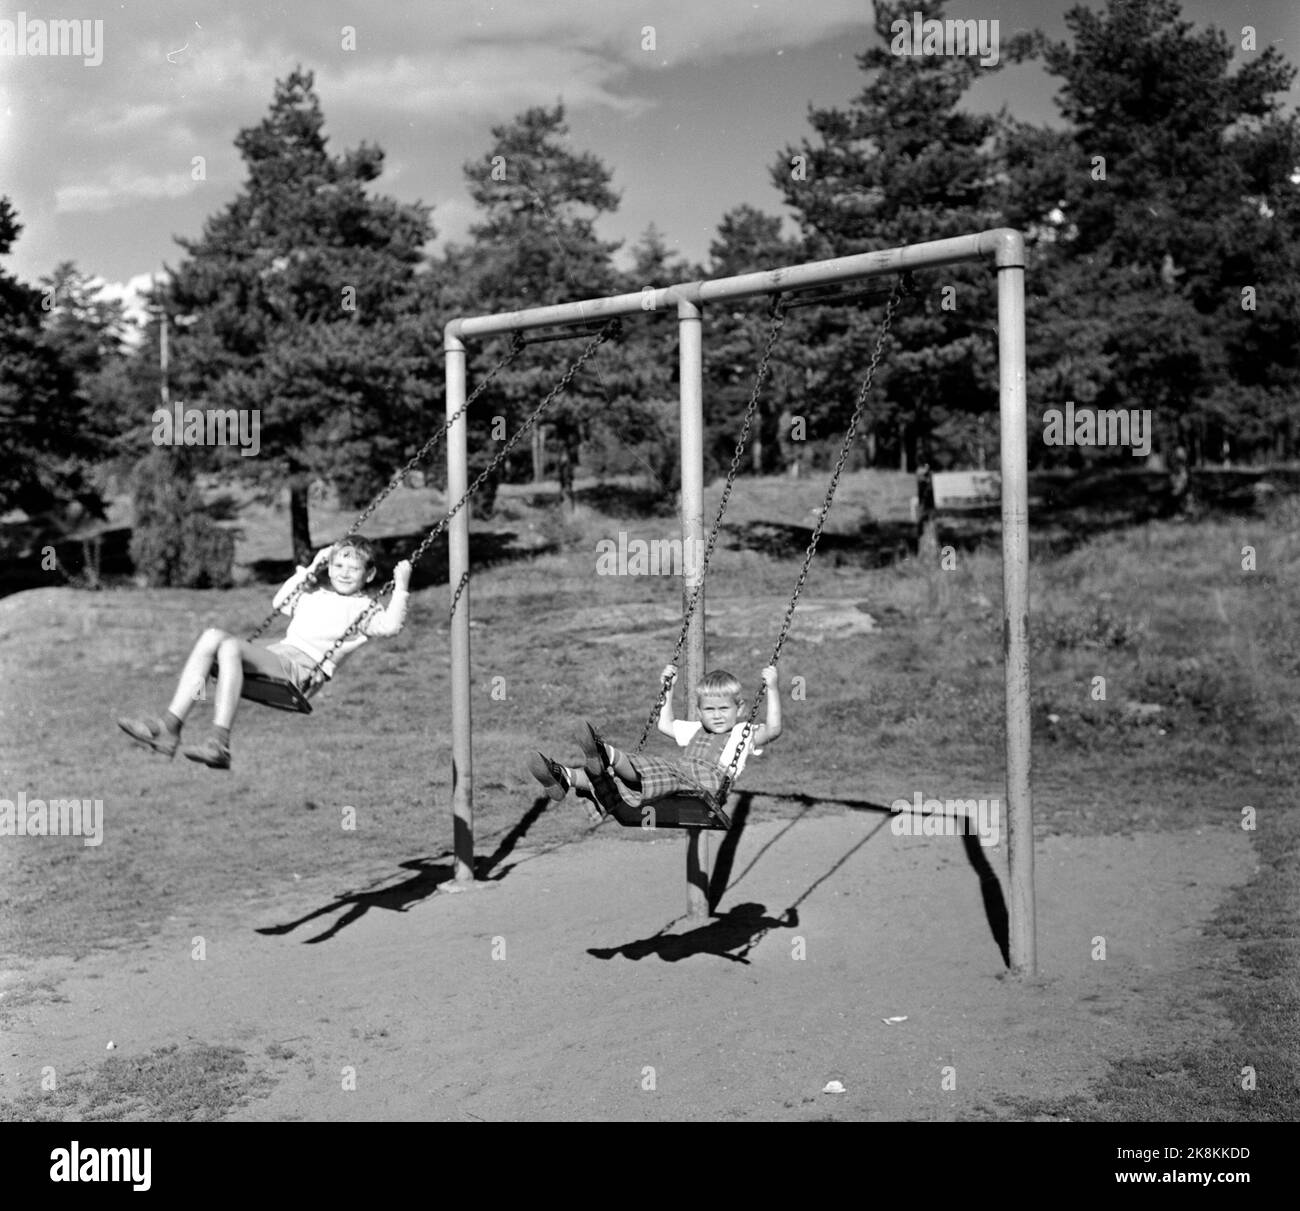 Oslo etwa 1955 viele Familien sind in die neue düstere Stadt Lambertsetter gezogen. Hier Kinder, die spielen / erinnern sich auf einem Rack. Foto; Bildmitte / ntb Stockfoto